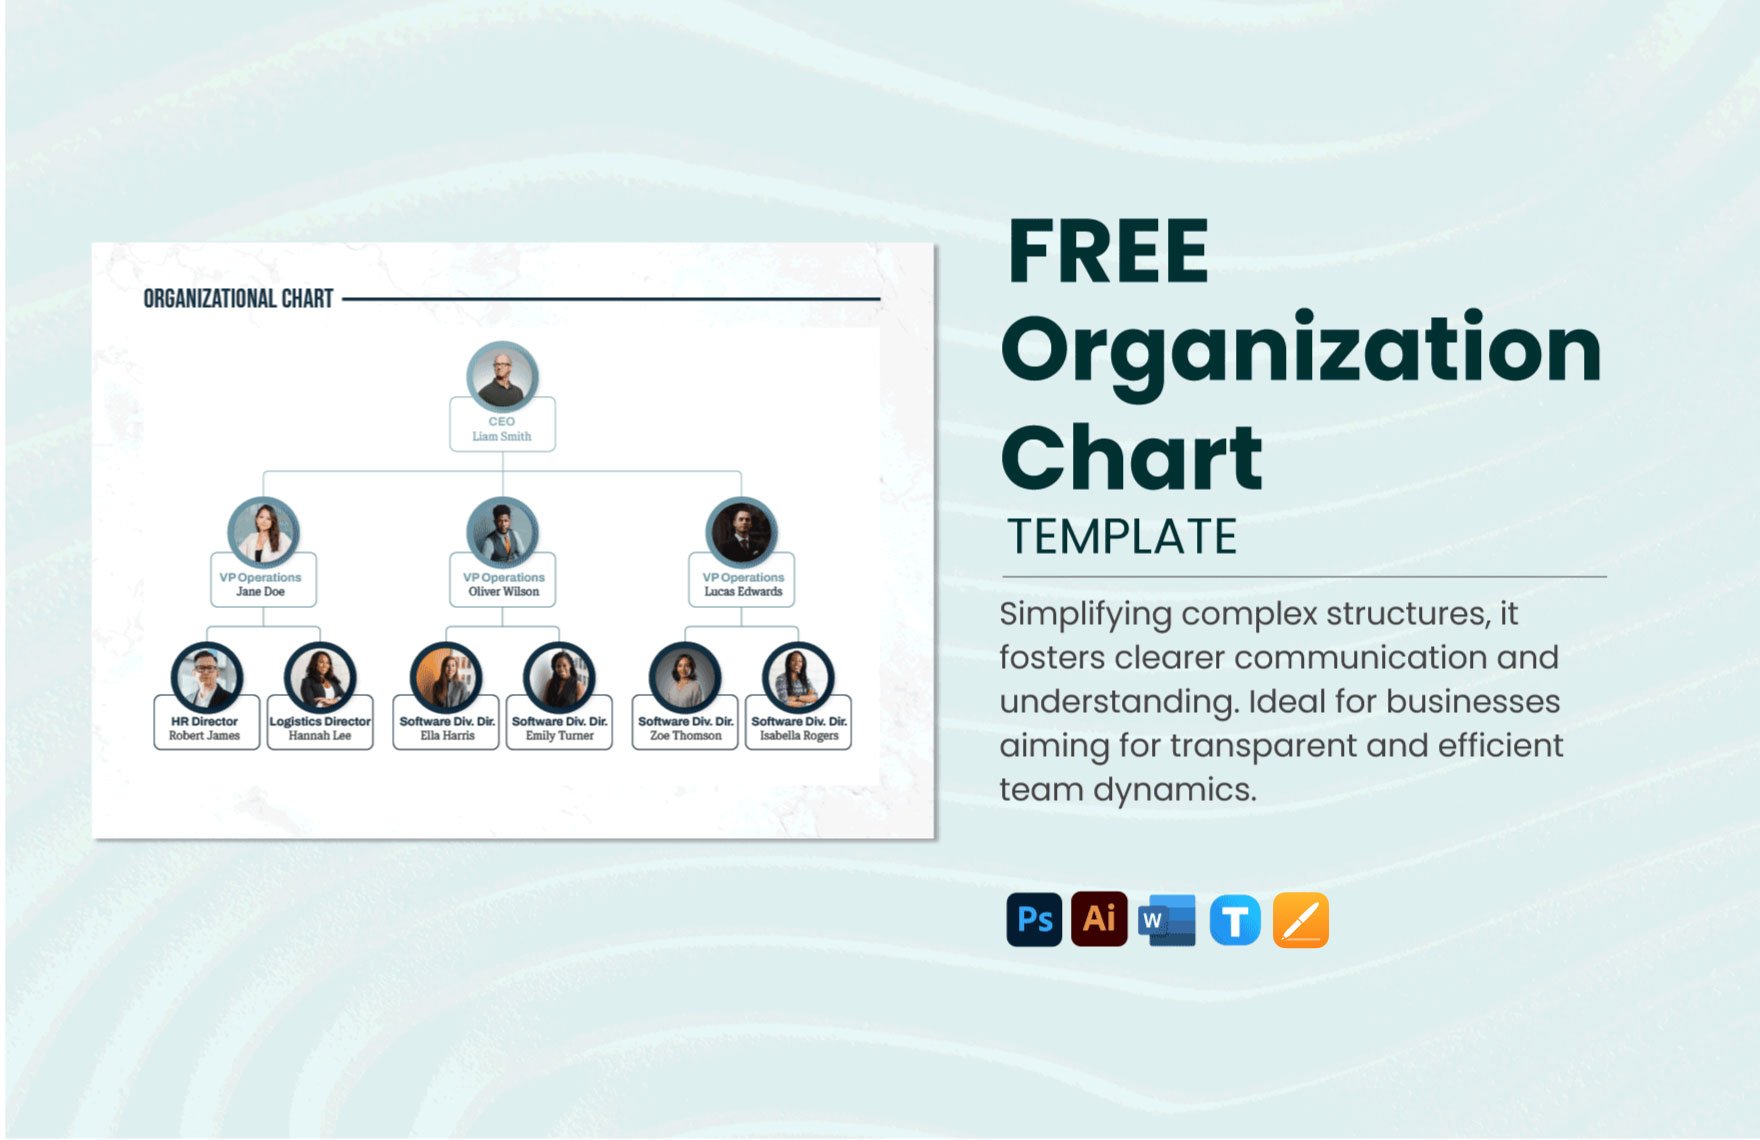 Free Organization Chart Template